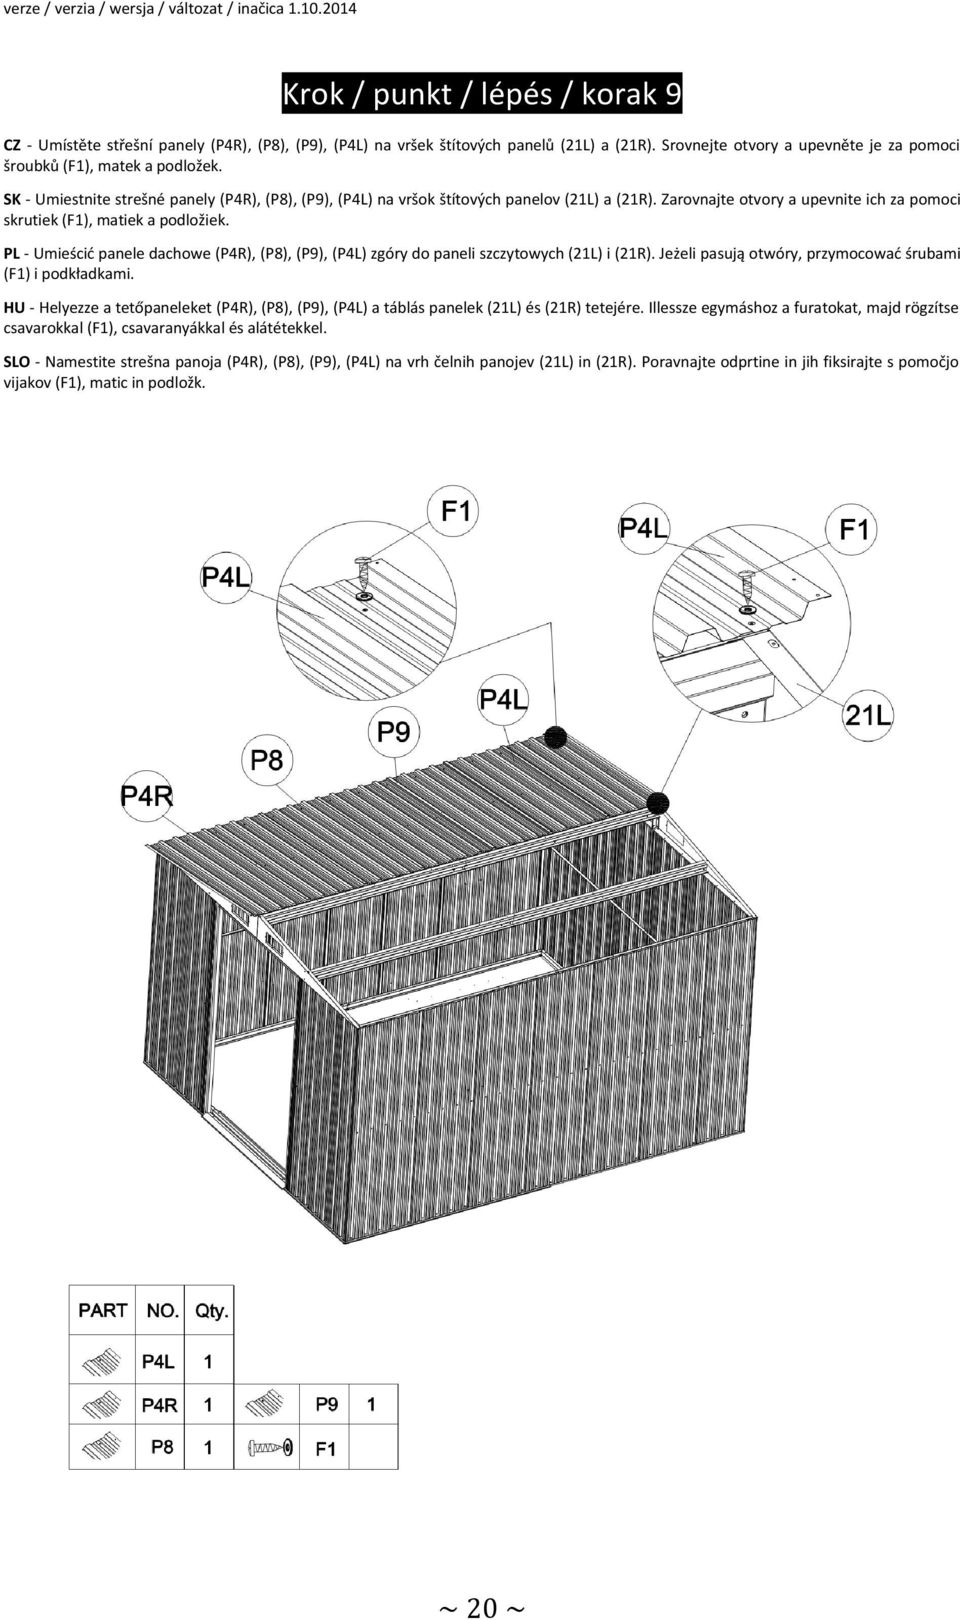 PL - Umieścić panele dachowe (P4R), (P8), (P9), (P4L) zgóry do paneli szczytowych (21L) i (21R). Jeżeli pasują otwóry, przymocować śrubami (F1) i podkładkami.